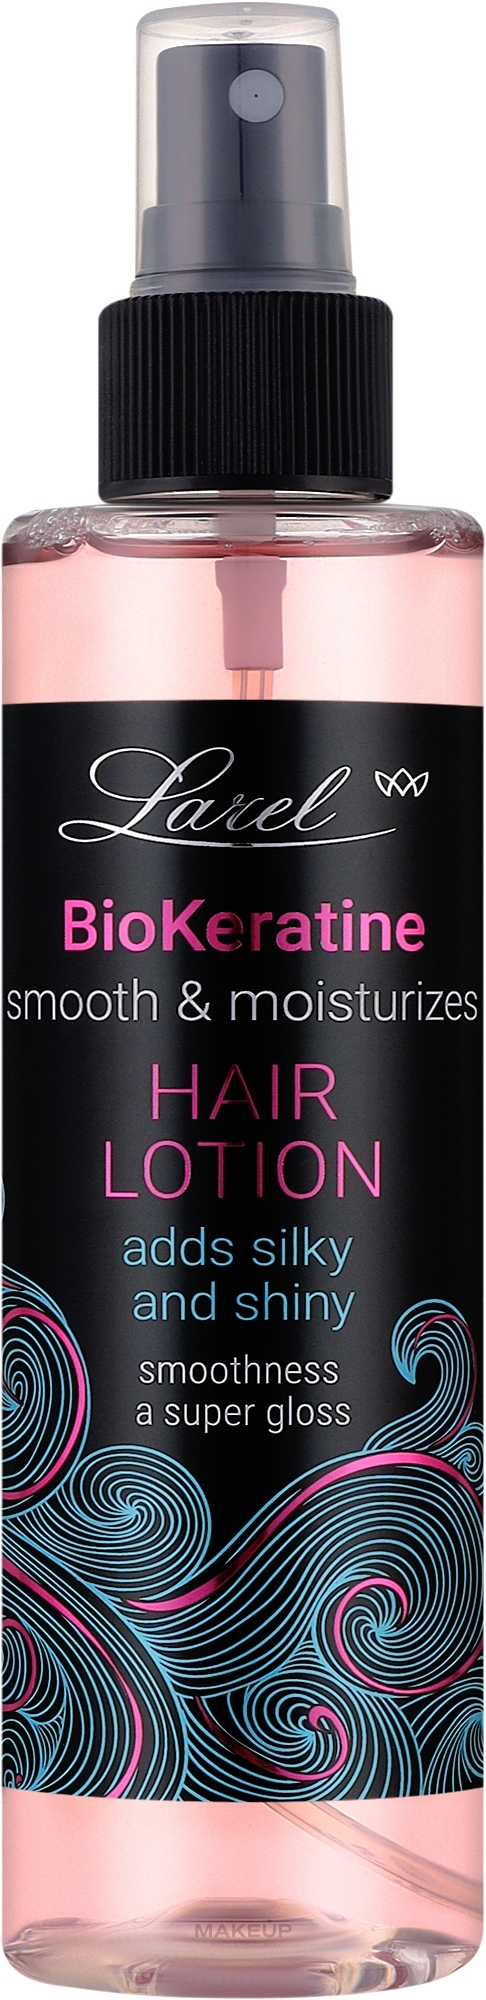 Лосьйон для розгладження волосся - Larel Bio-Keratin Hair Lotion — фото 200ml